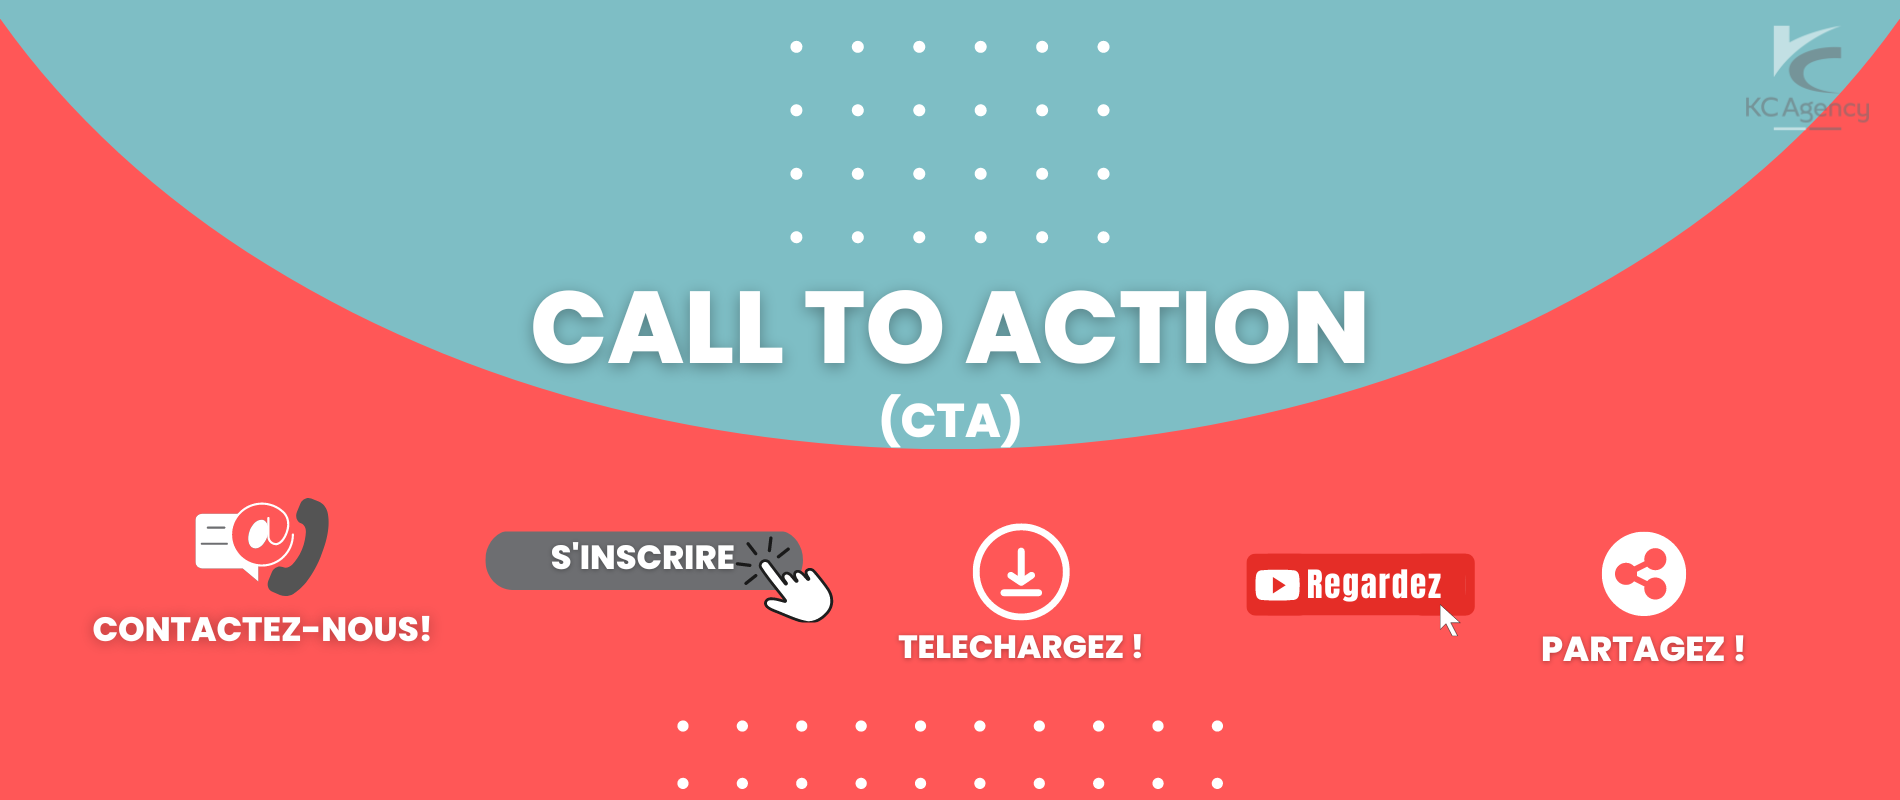 Le CTA ( call to action) c’est quoi et à quoi ça sert?